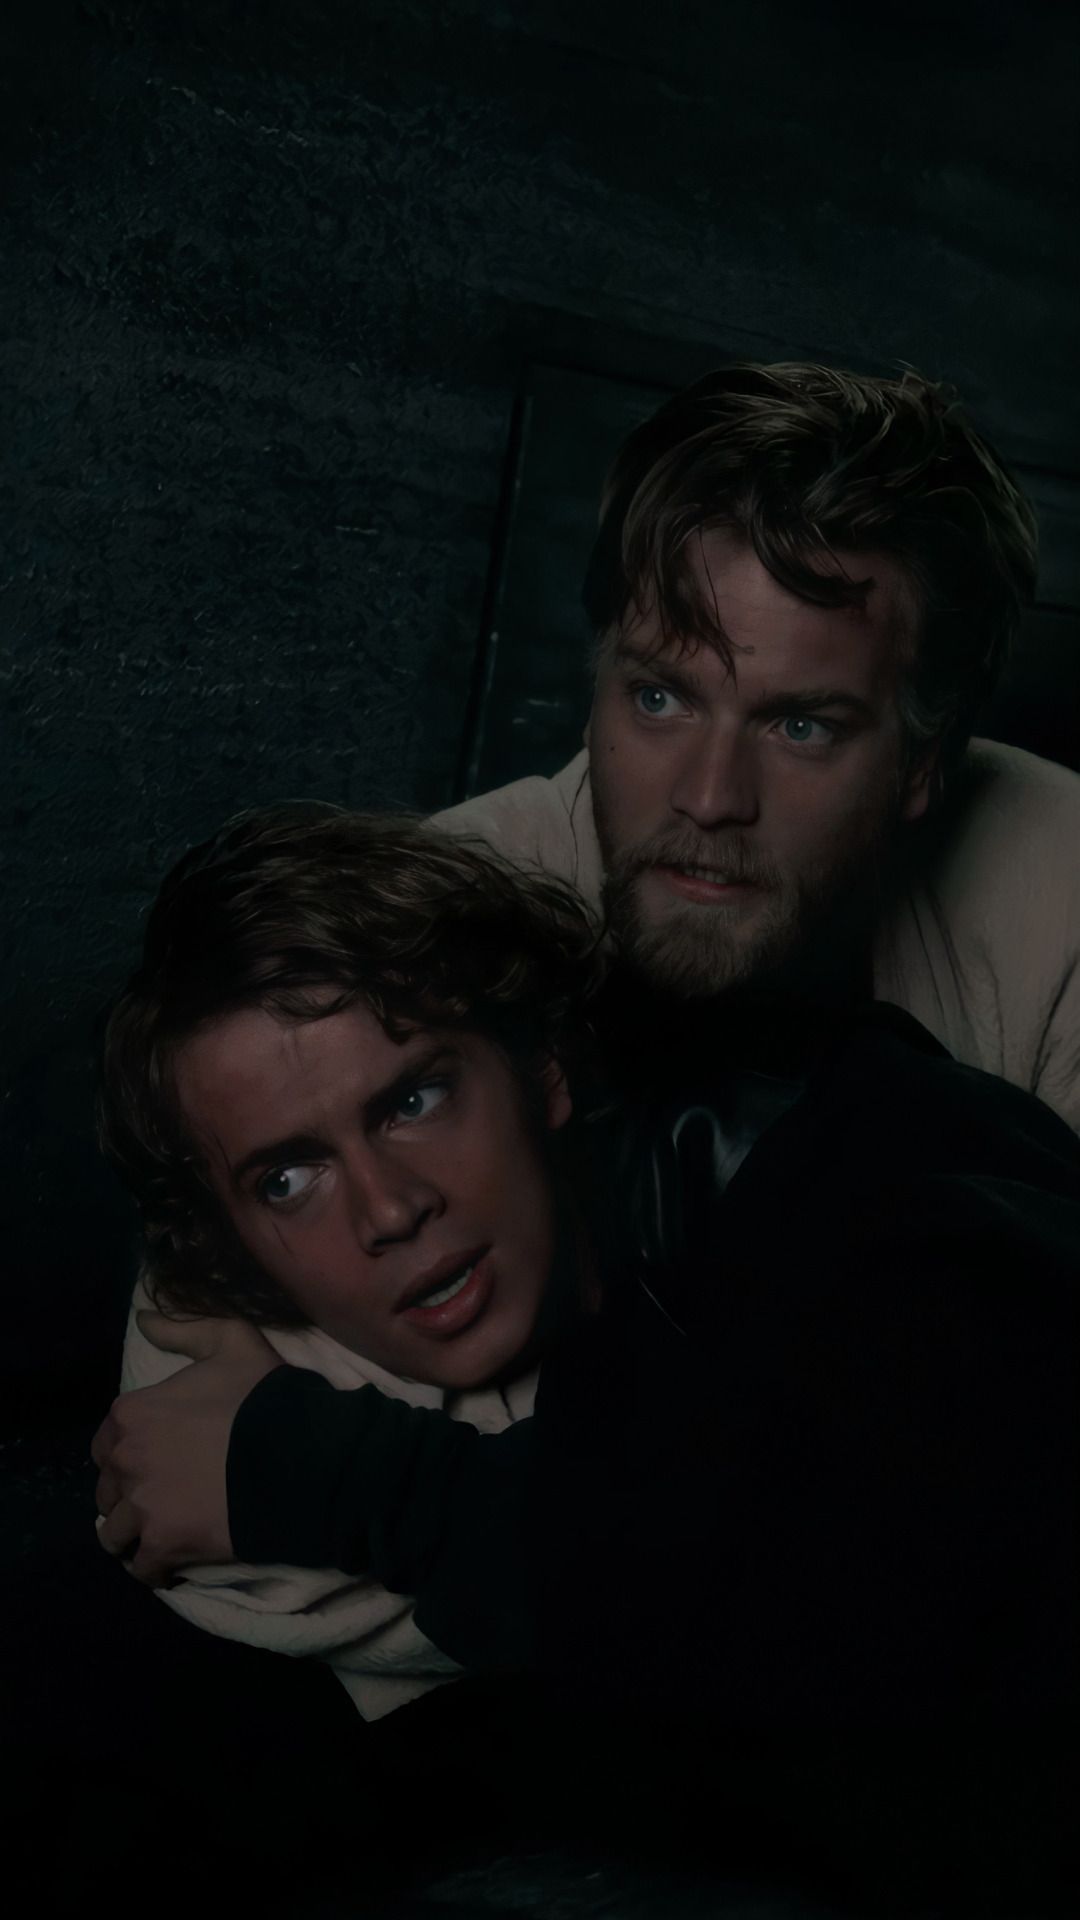 Anakin and Obi-Wan hugging in the dark - Star Wars